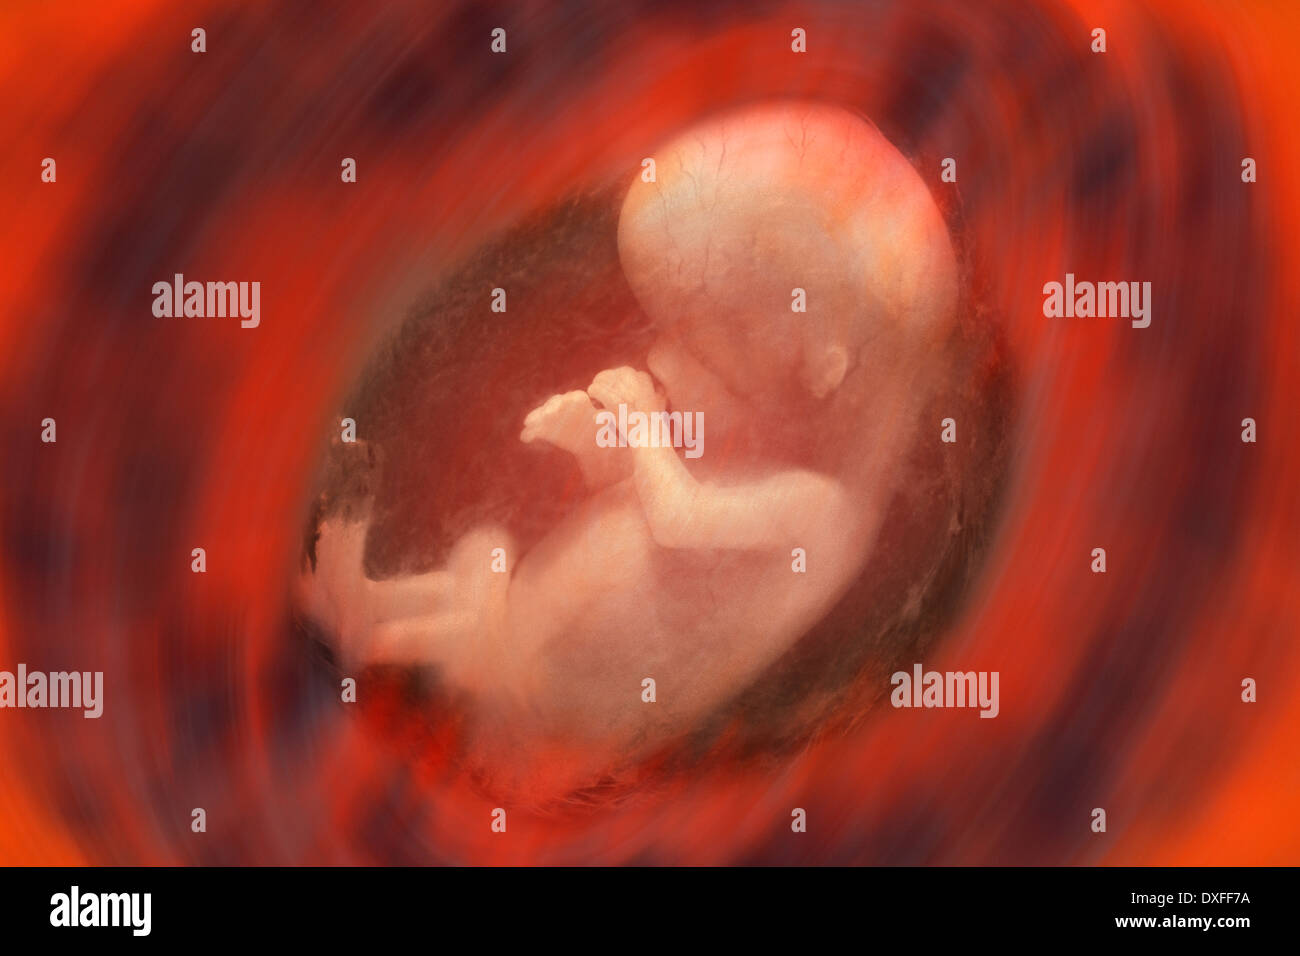 Vue interne d'un foetus humain - environ 10 semaines Banque D'Images